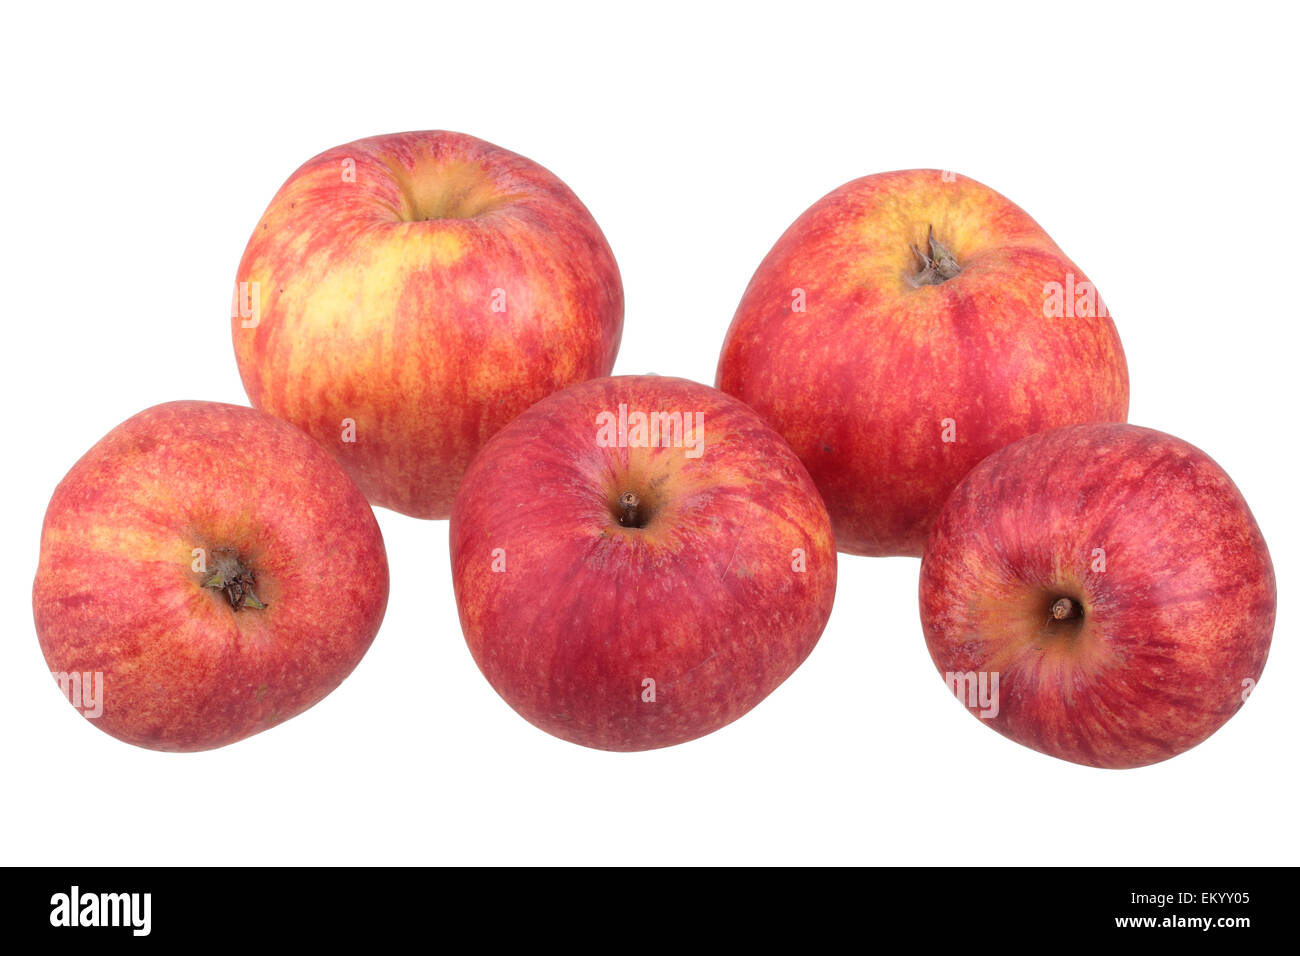 Red Gravenstein apple variety Stock Photo